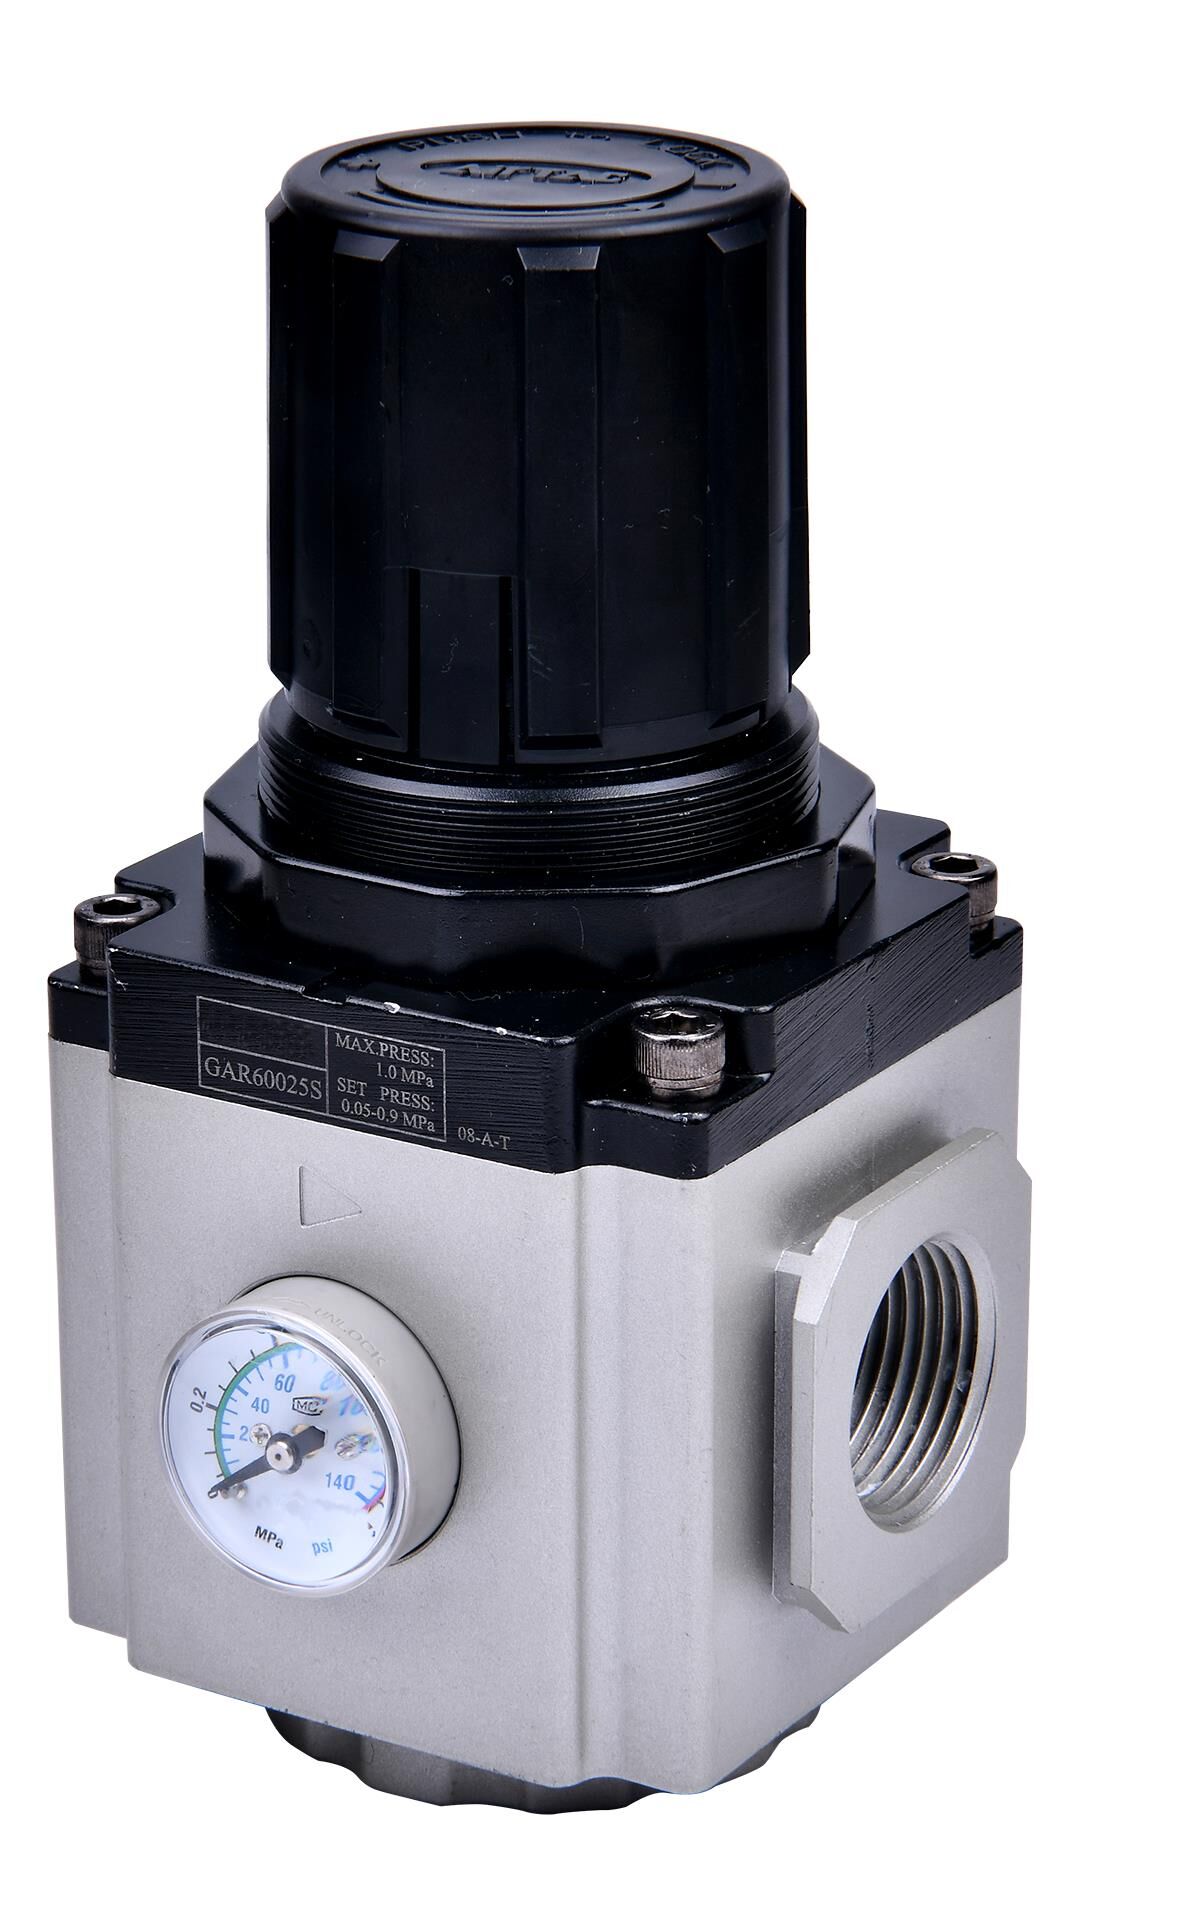 Régulateur de pression d'air en aluminium + plastique, régulateur de filtre  à air, pour compresseurs d'air à outils pneumatiques